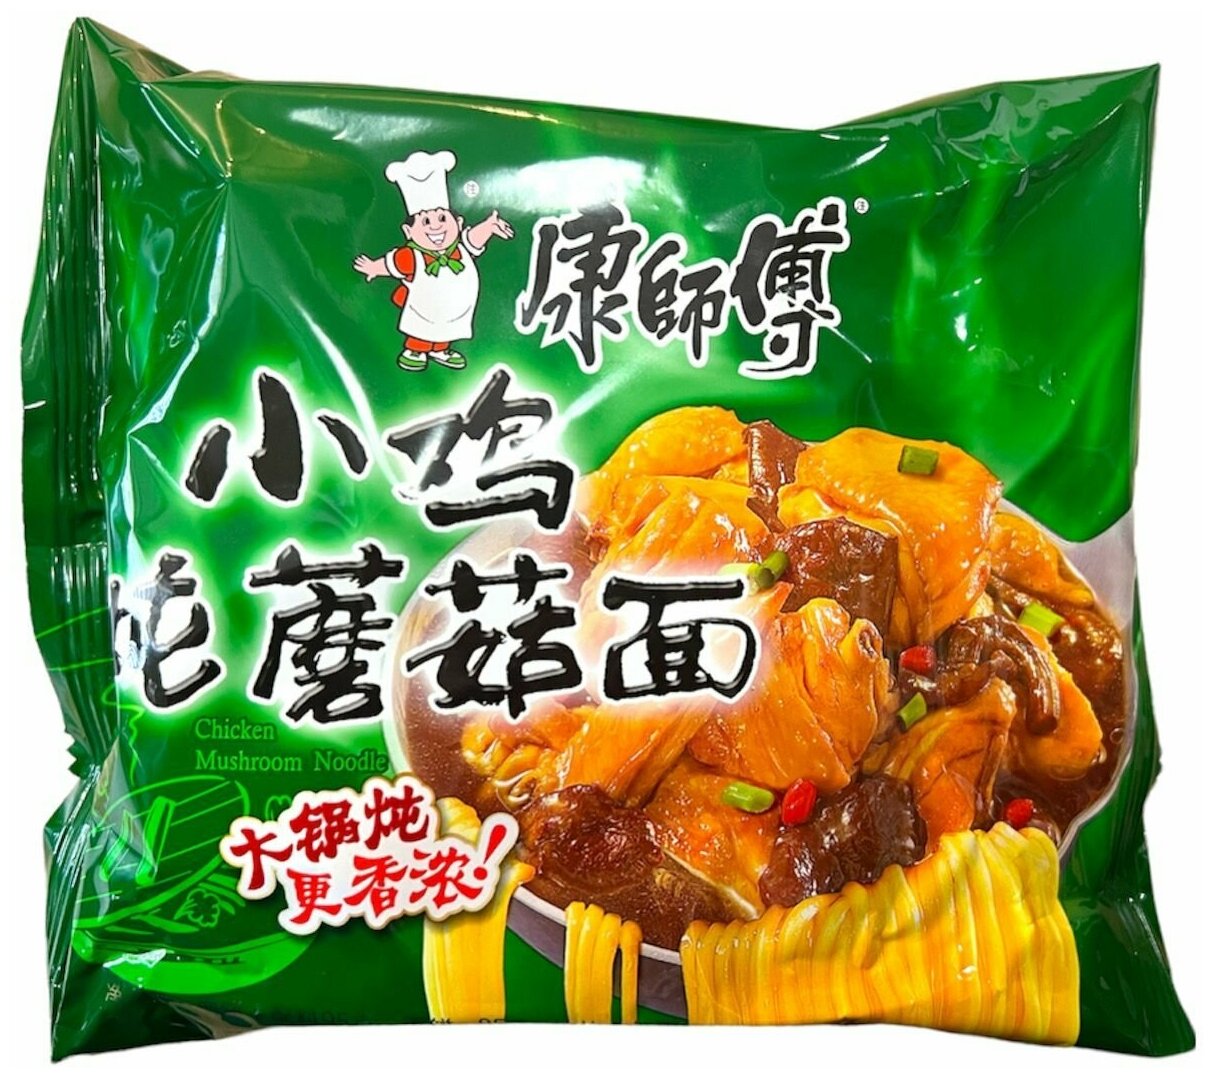 Китайская лапша быстрого приготовления с курицей и грибами упаковка 4 штуки / зеленая